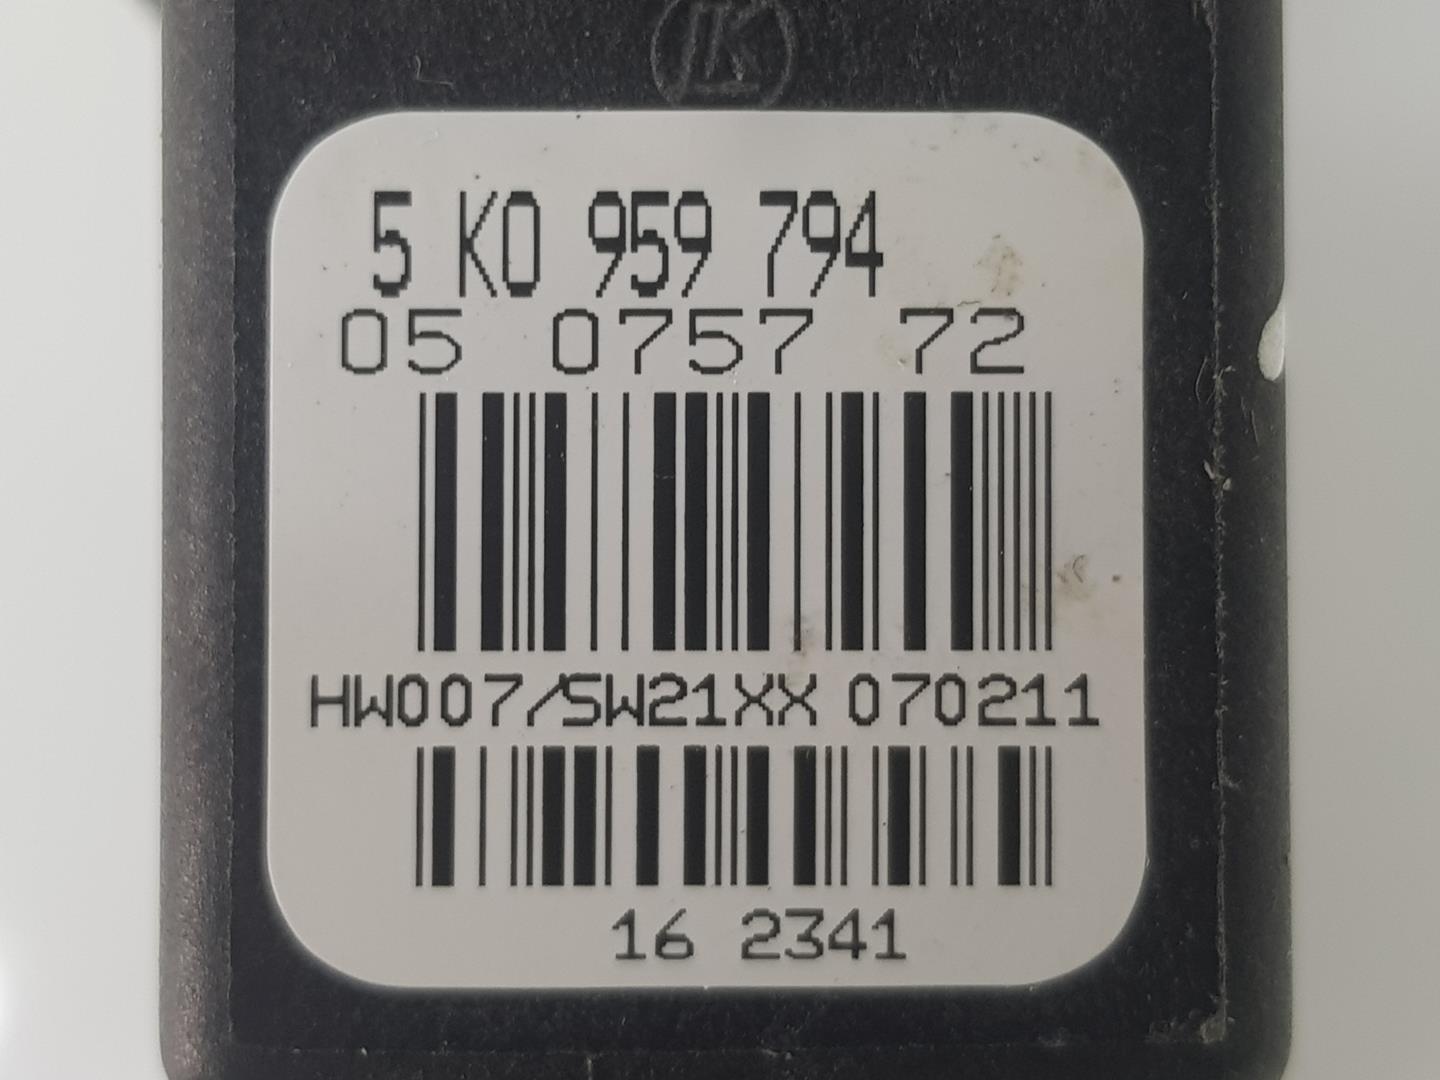 VOLKSWAGEN Golf 5 generation (2003-2009) Rear Left Door Window Control Motor 5K0959703D, 5K0959794 19729318